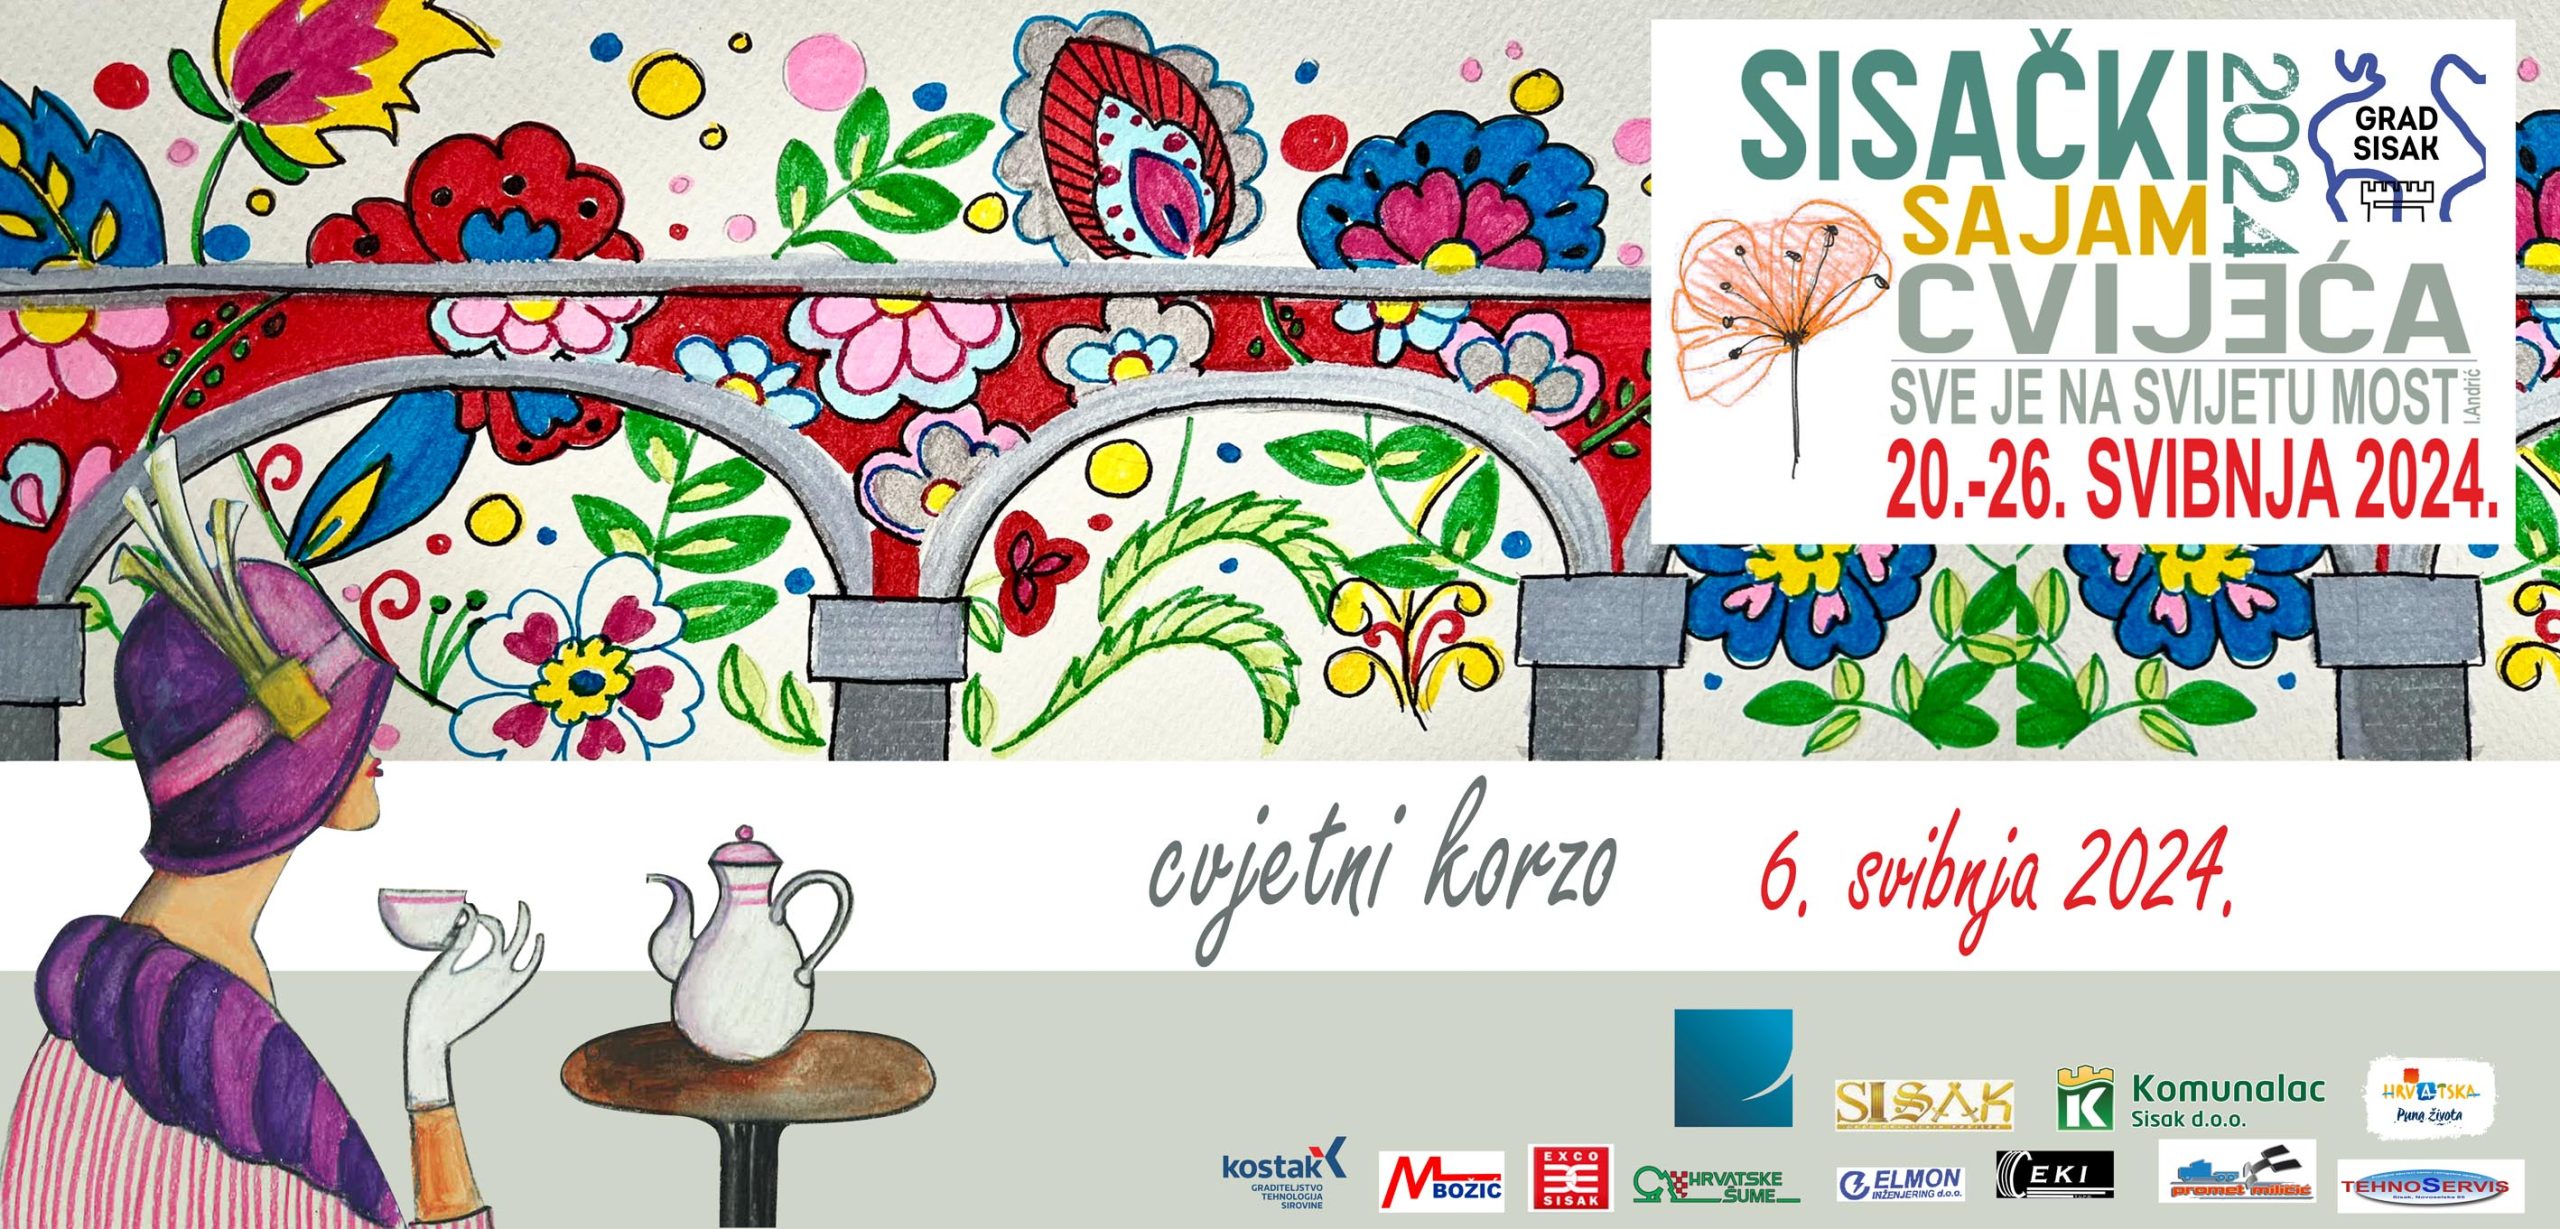 You are currently viewing Prijave za izlagače na Sisačkom sajmu cvijeća (20.-26.5.2024.)